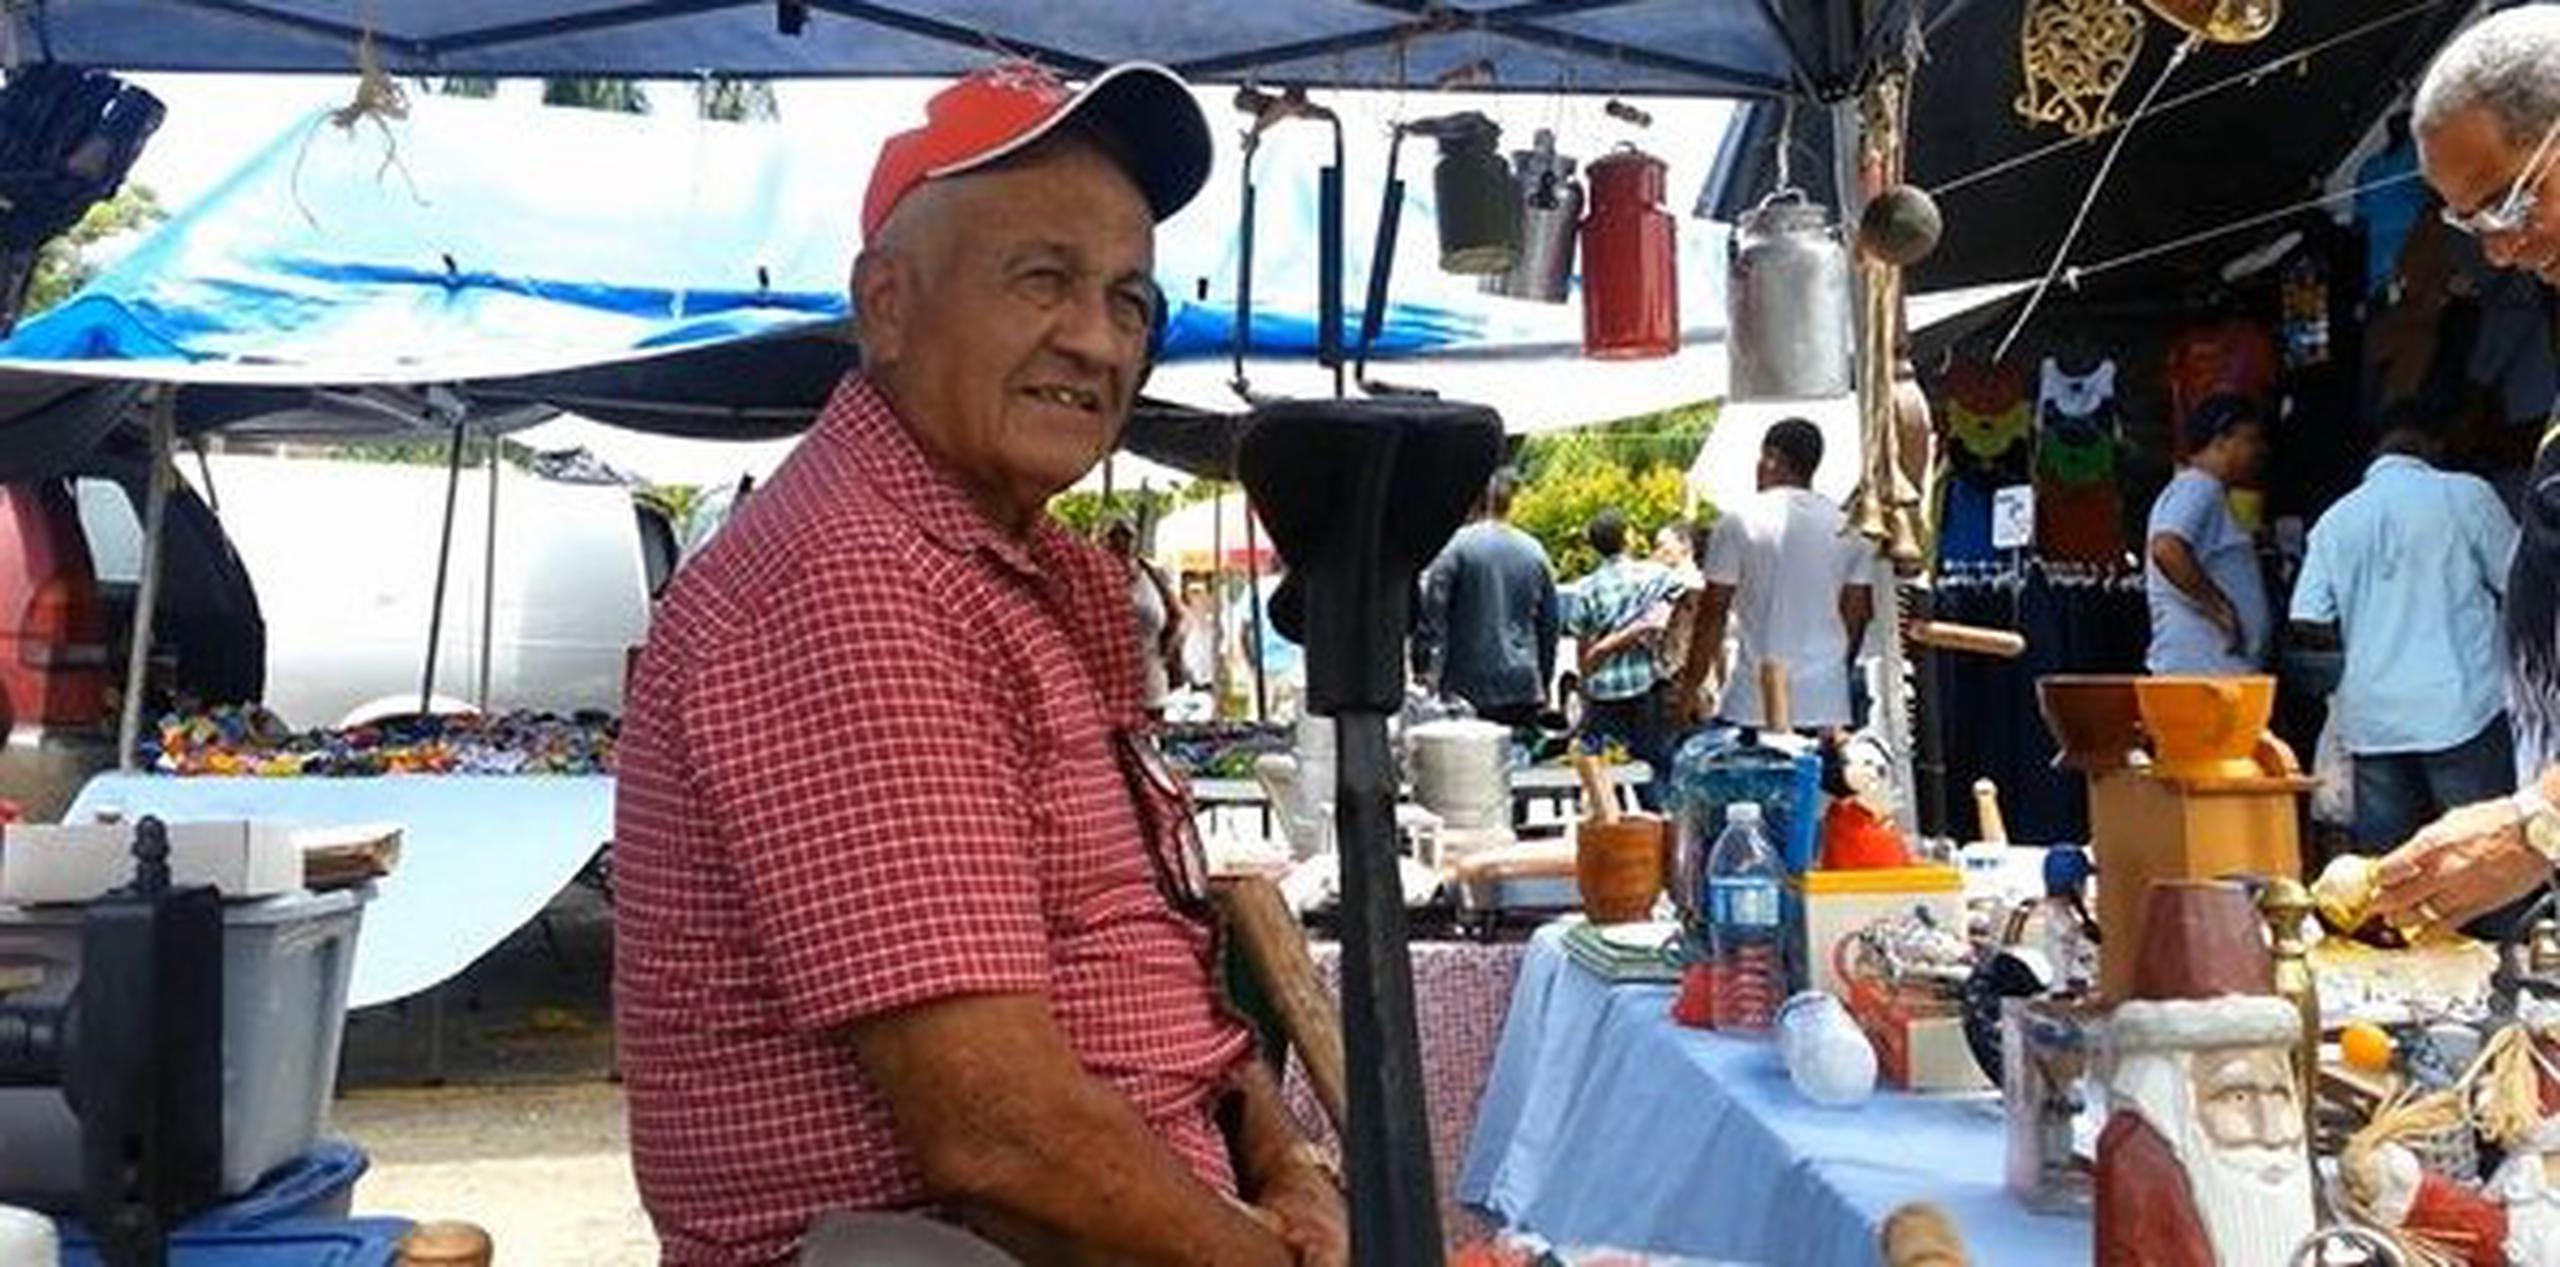 La historia de Ismael Rosario Avilés, de 80 años de edad, eclipsa los artículos que colecciona y vende. (frodriguez@gfrmedia.com)